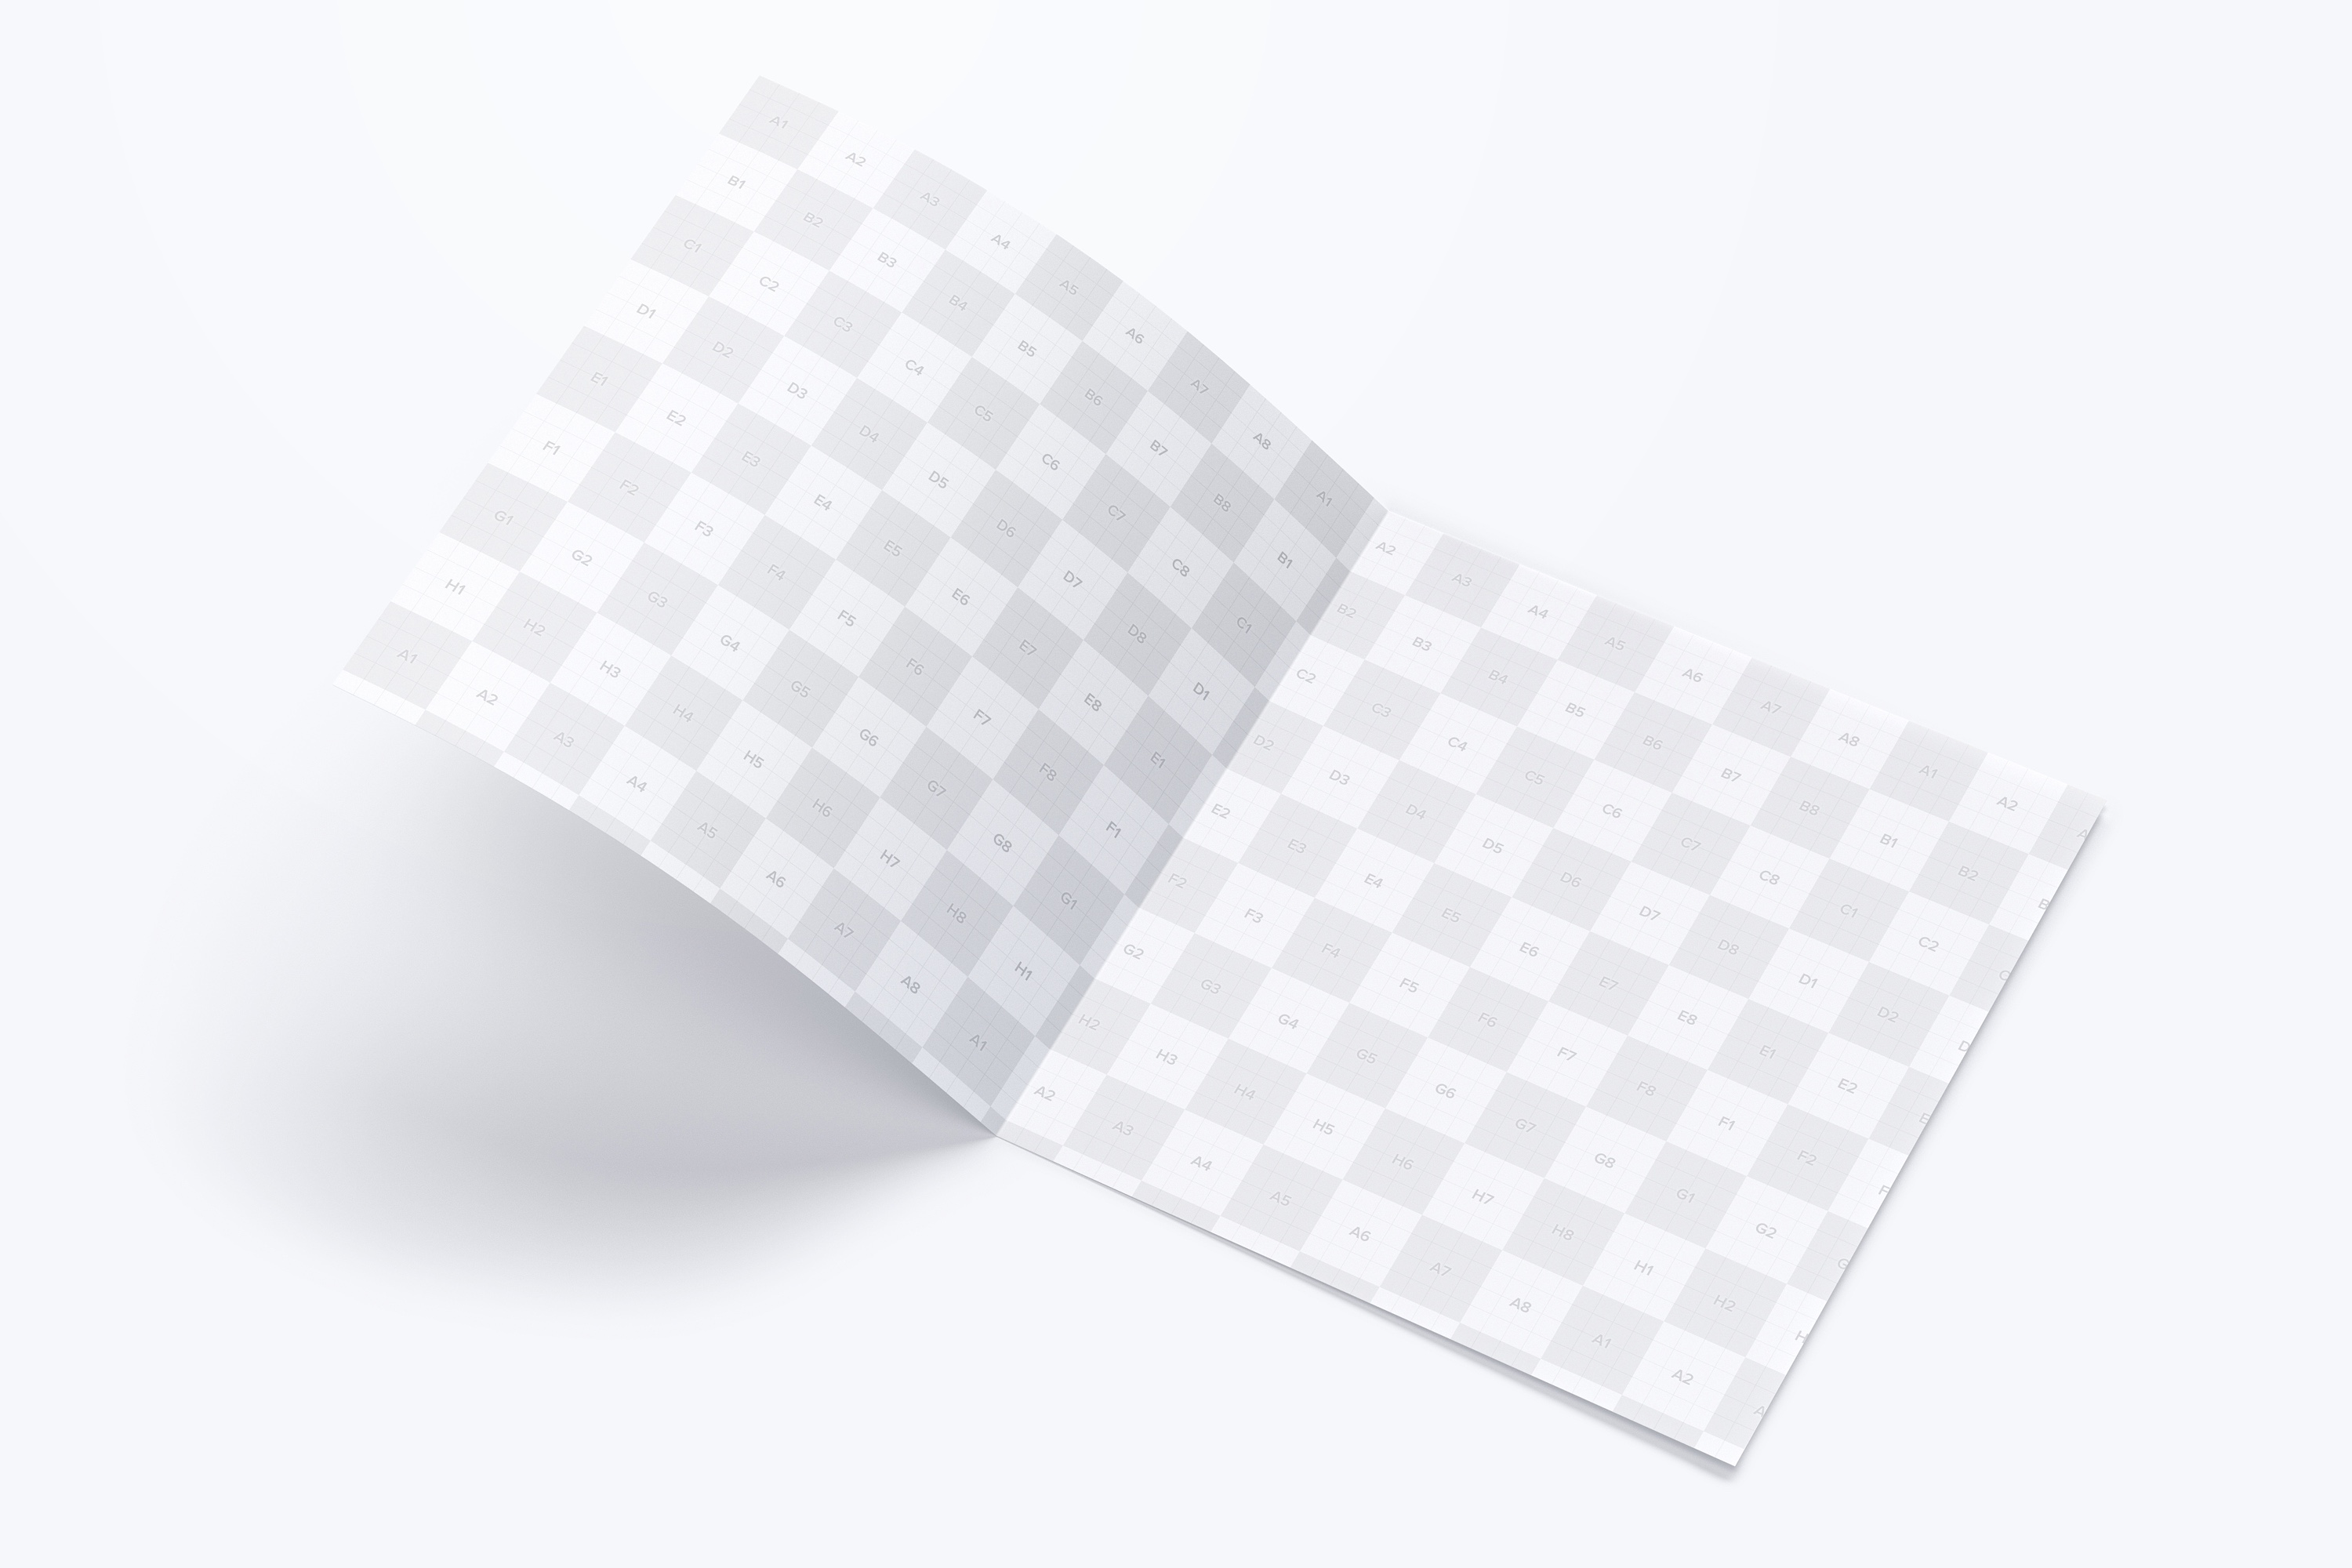 方形对折页传单/小册子设计效果预览样机02 Square Bi Fold Brochure Mockup 02插图(2)